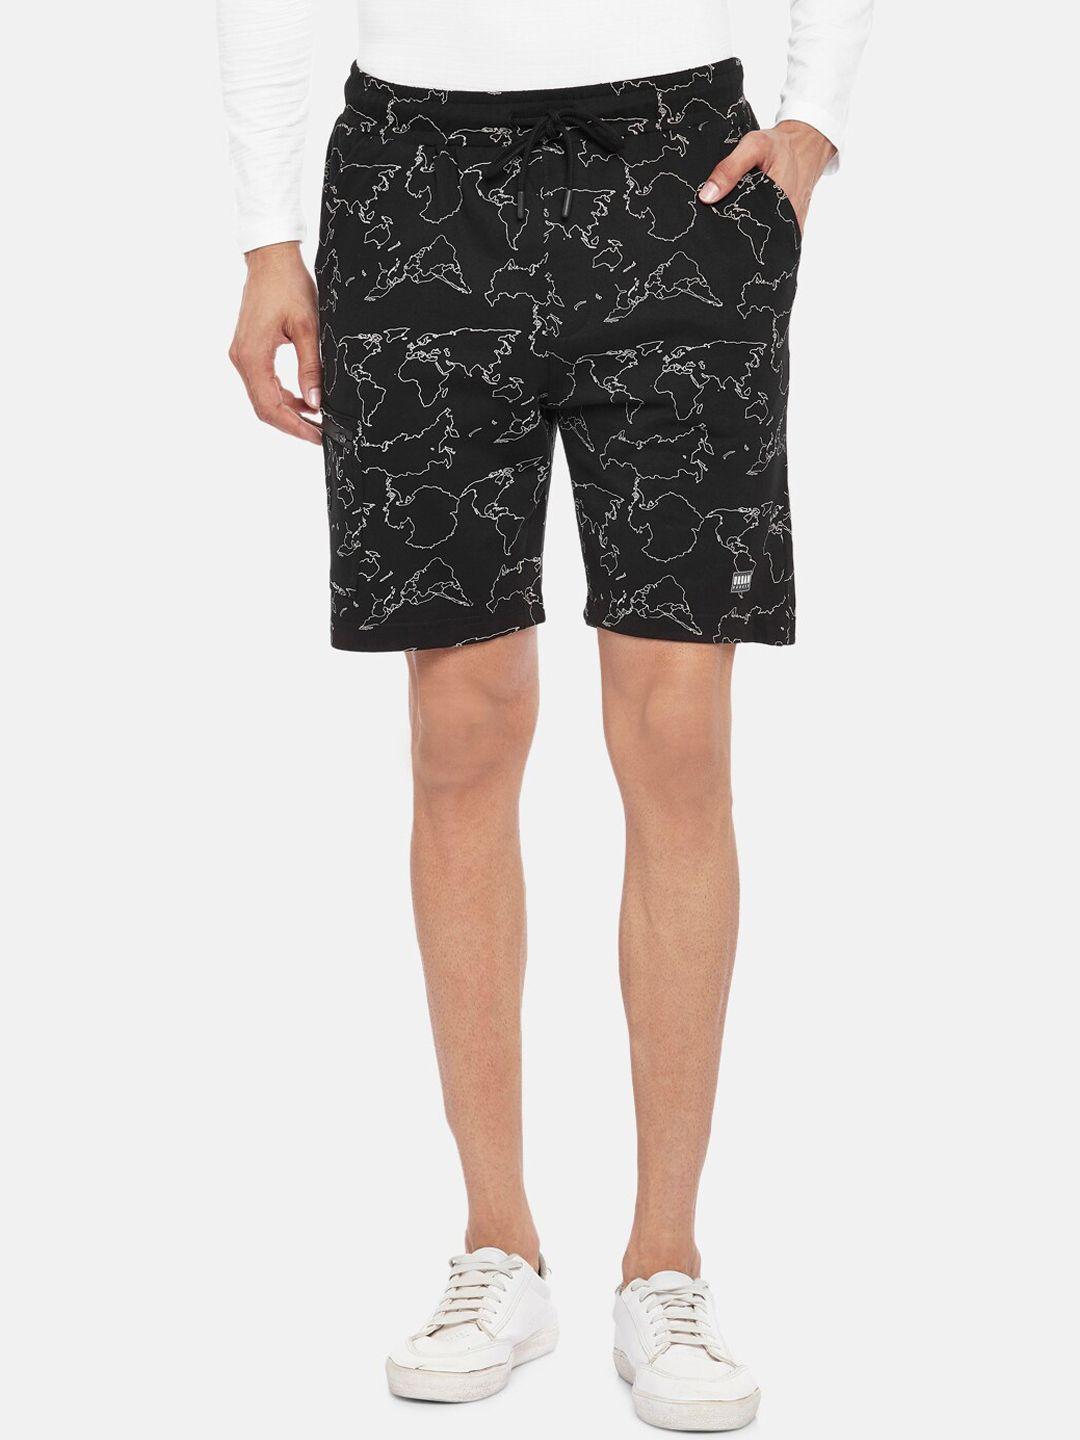 urban ranger by pantaloons men black printed slim fit regular shorts